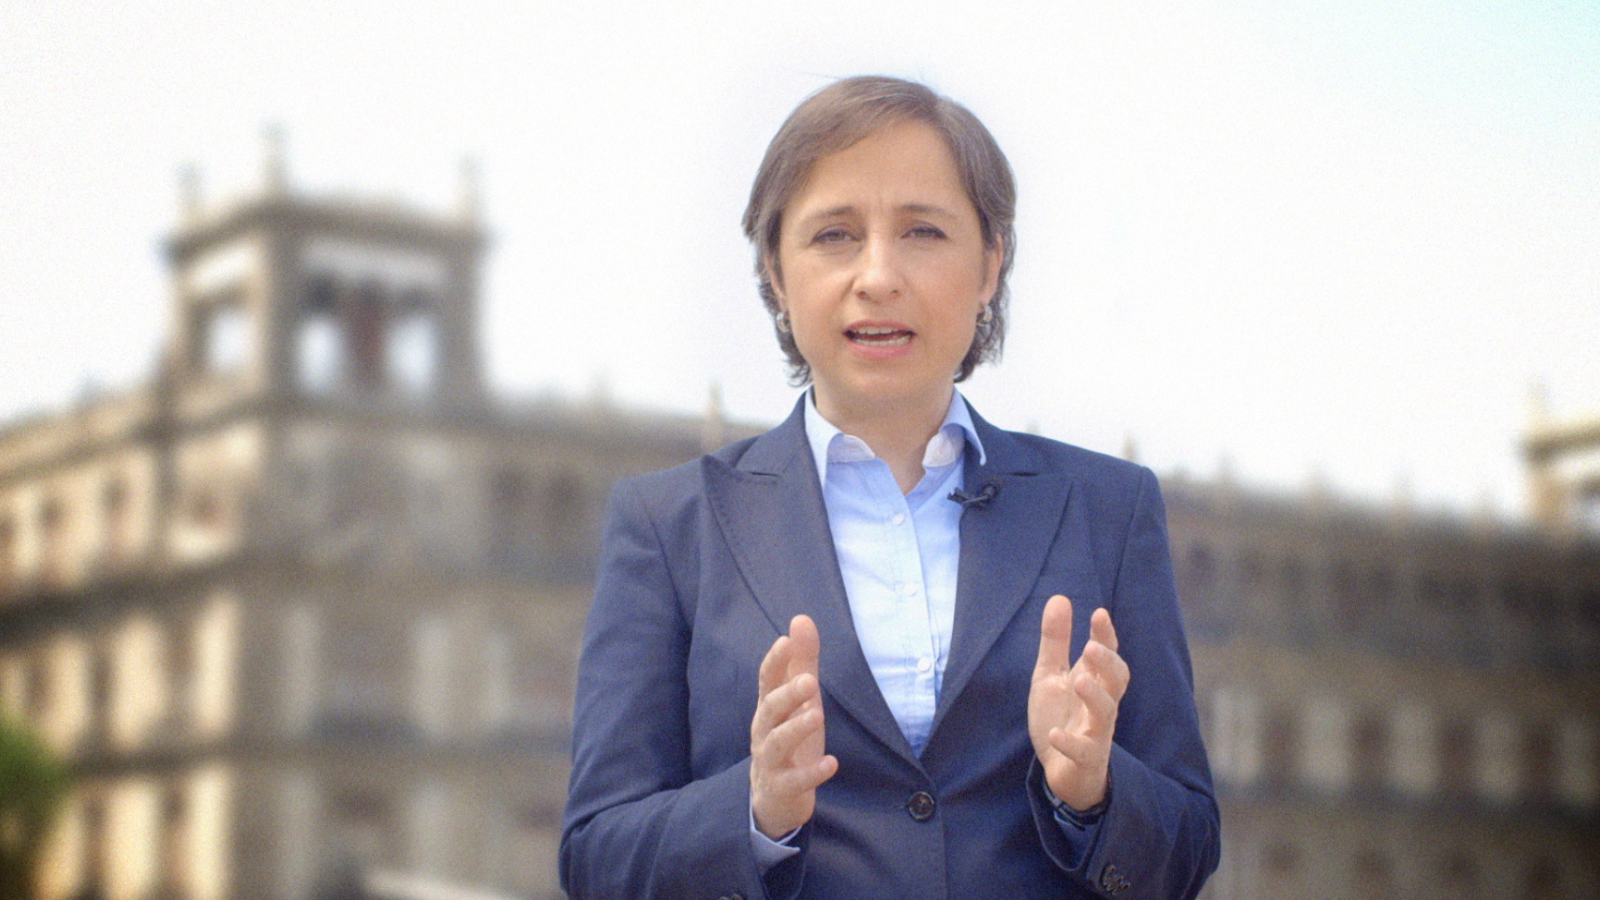 Allá vamos... con Carmen Aristegui - CNN Video